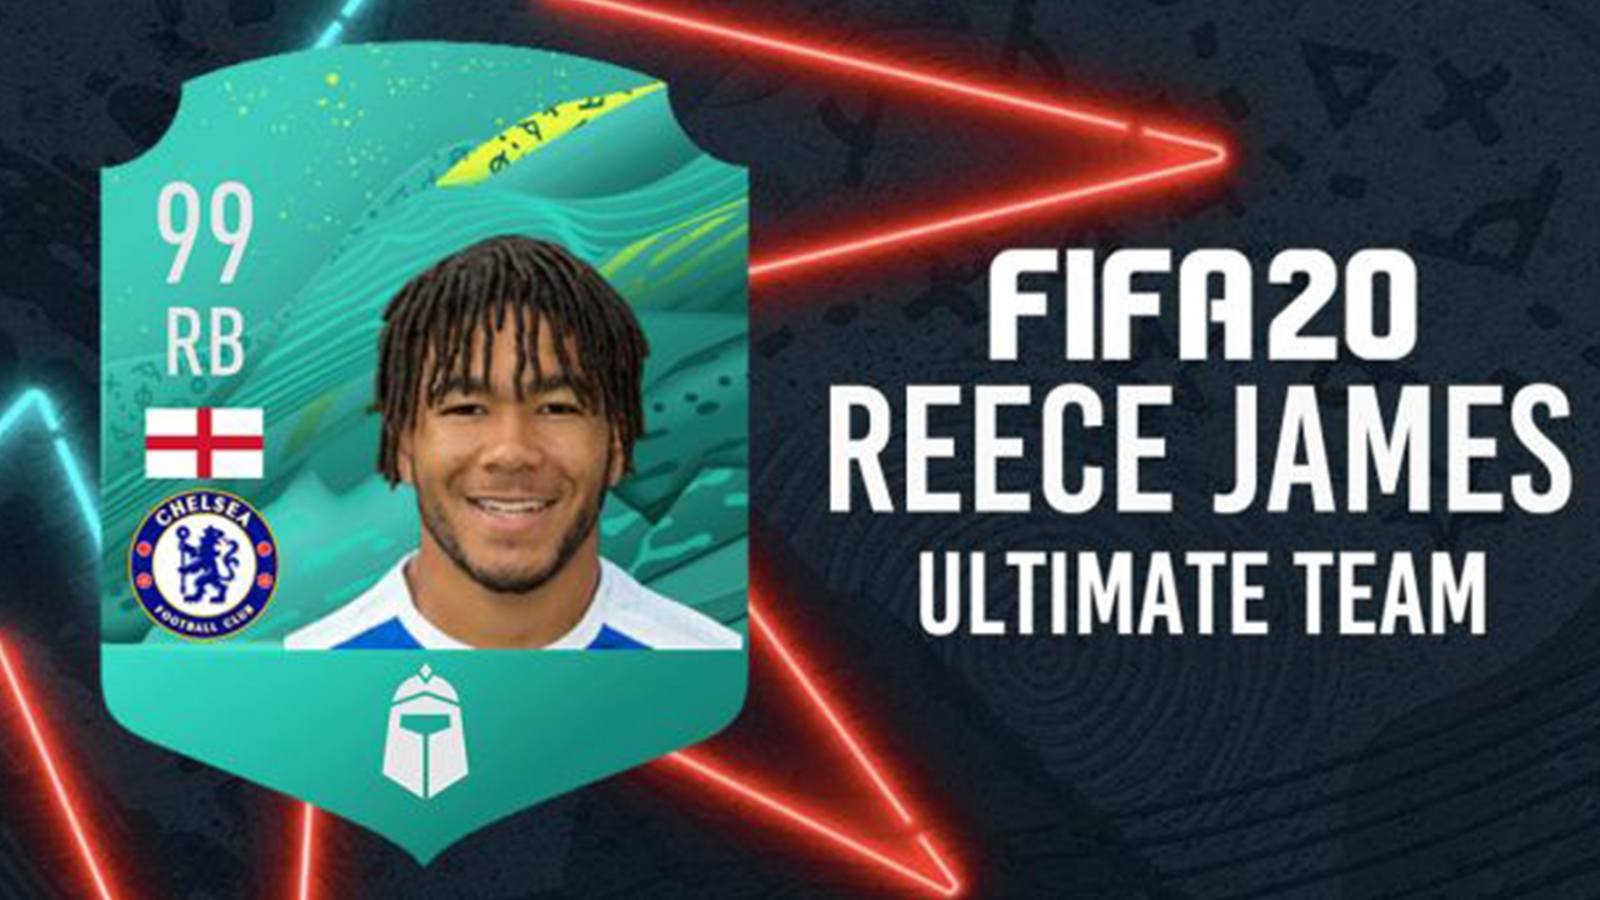 Equipe FIFA 20 Ultimate Team de Reece James